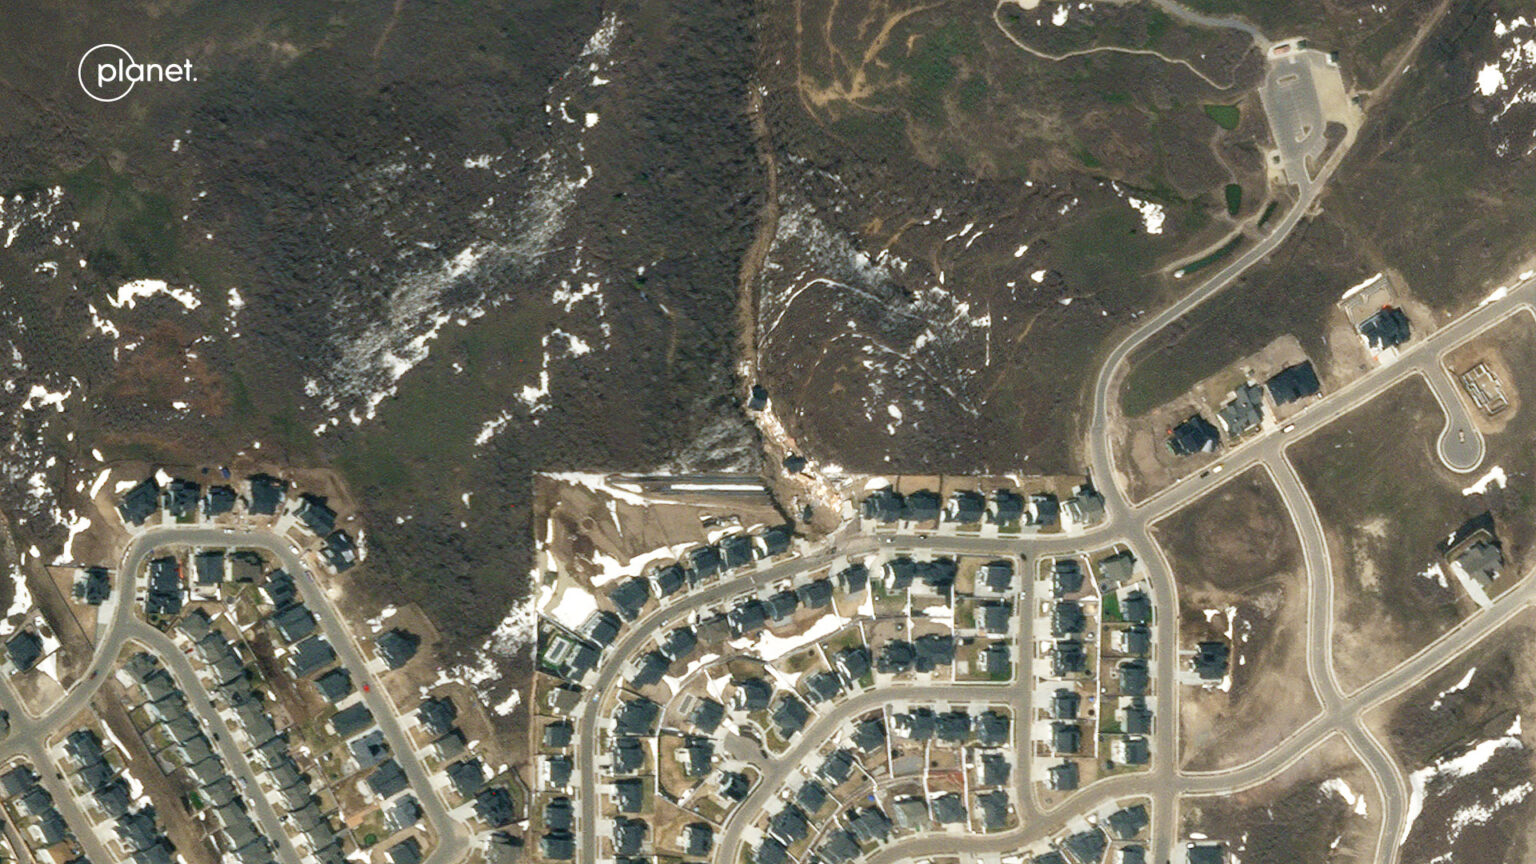 images of the landslide at Draper in Utah The Landslide Blog